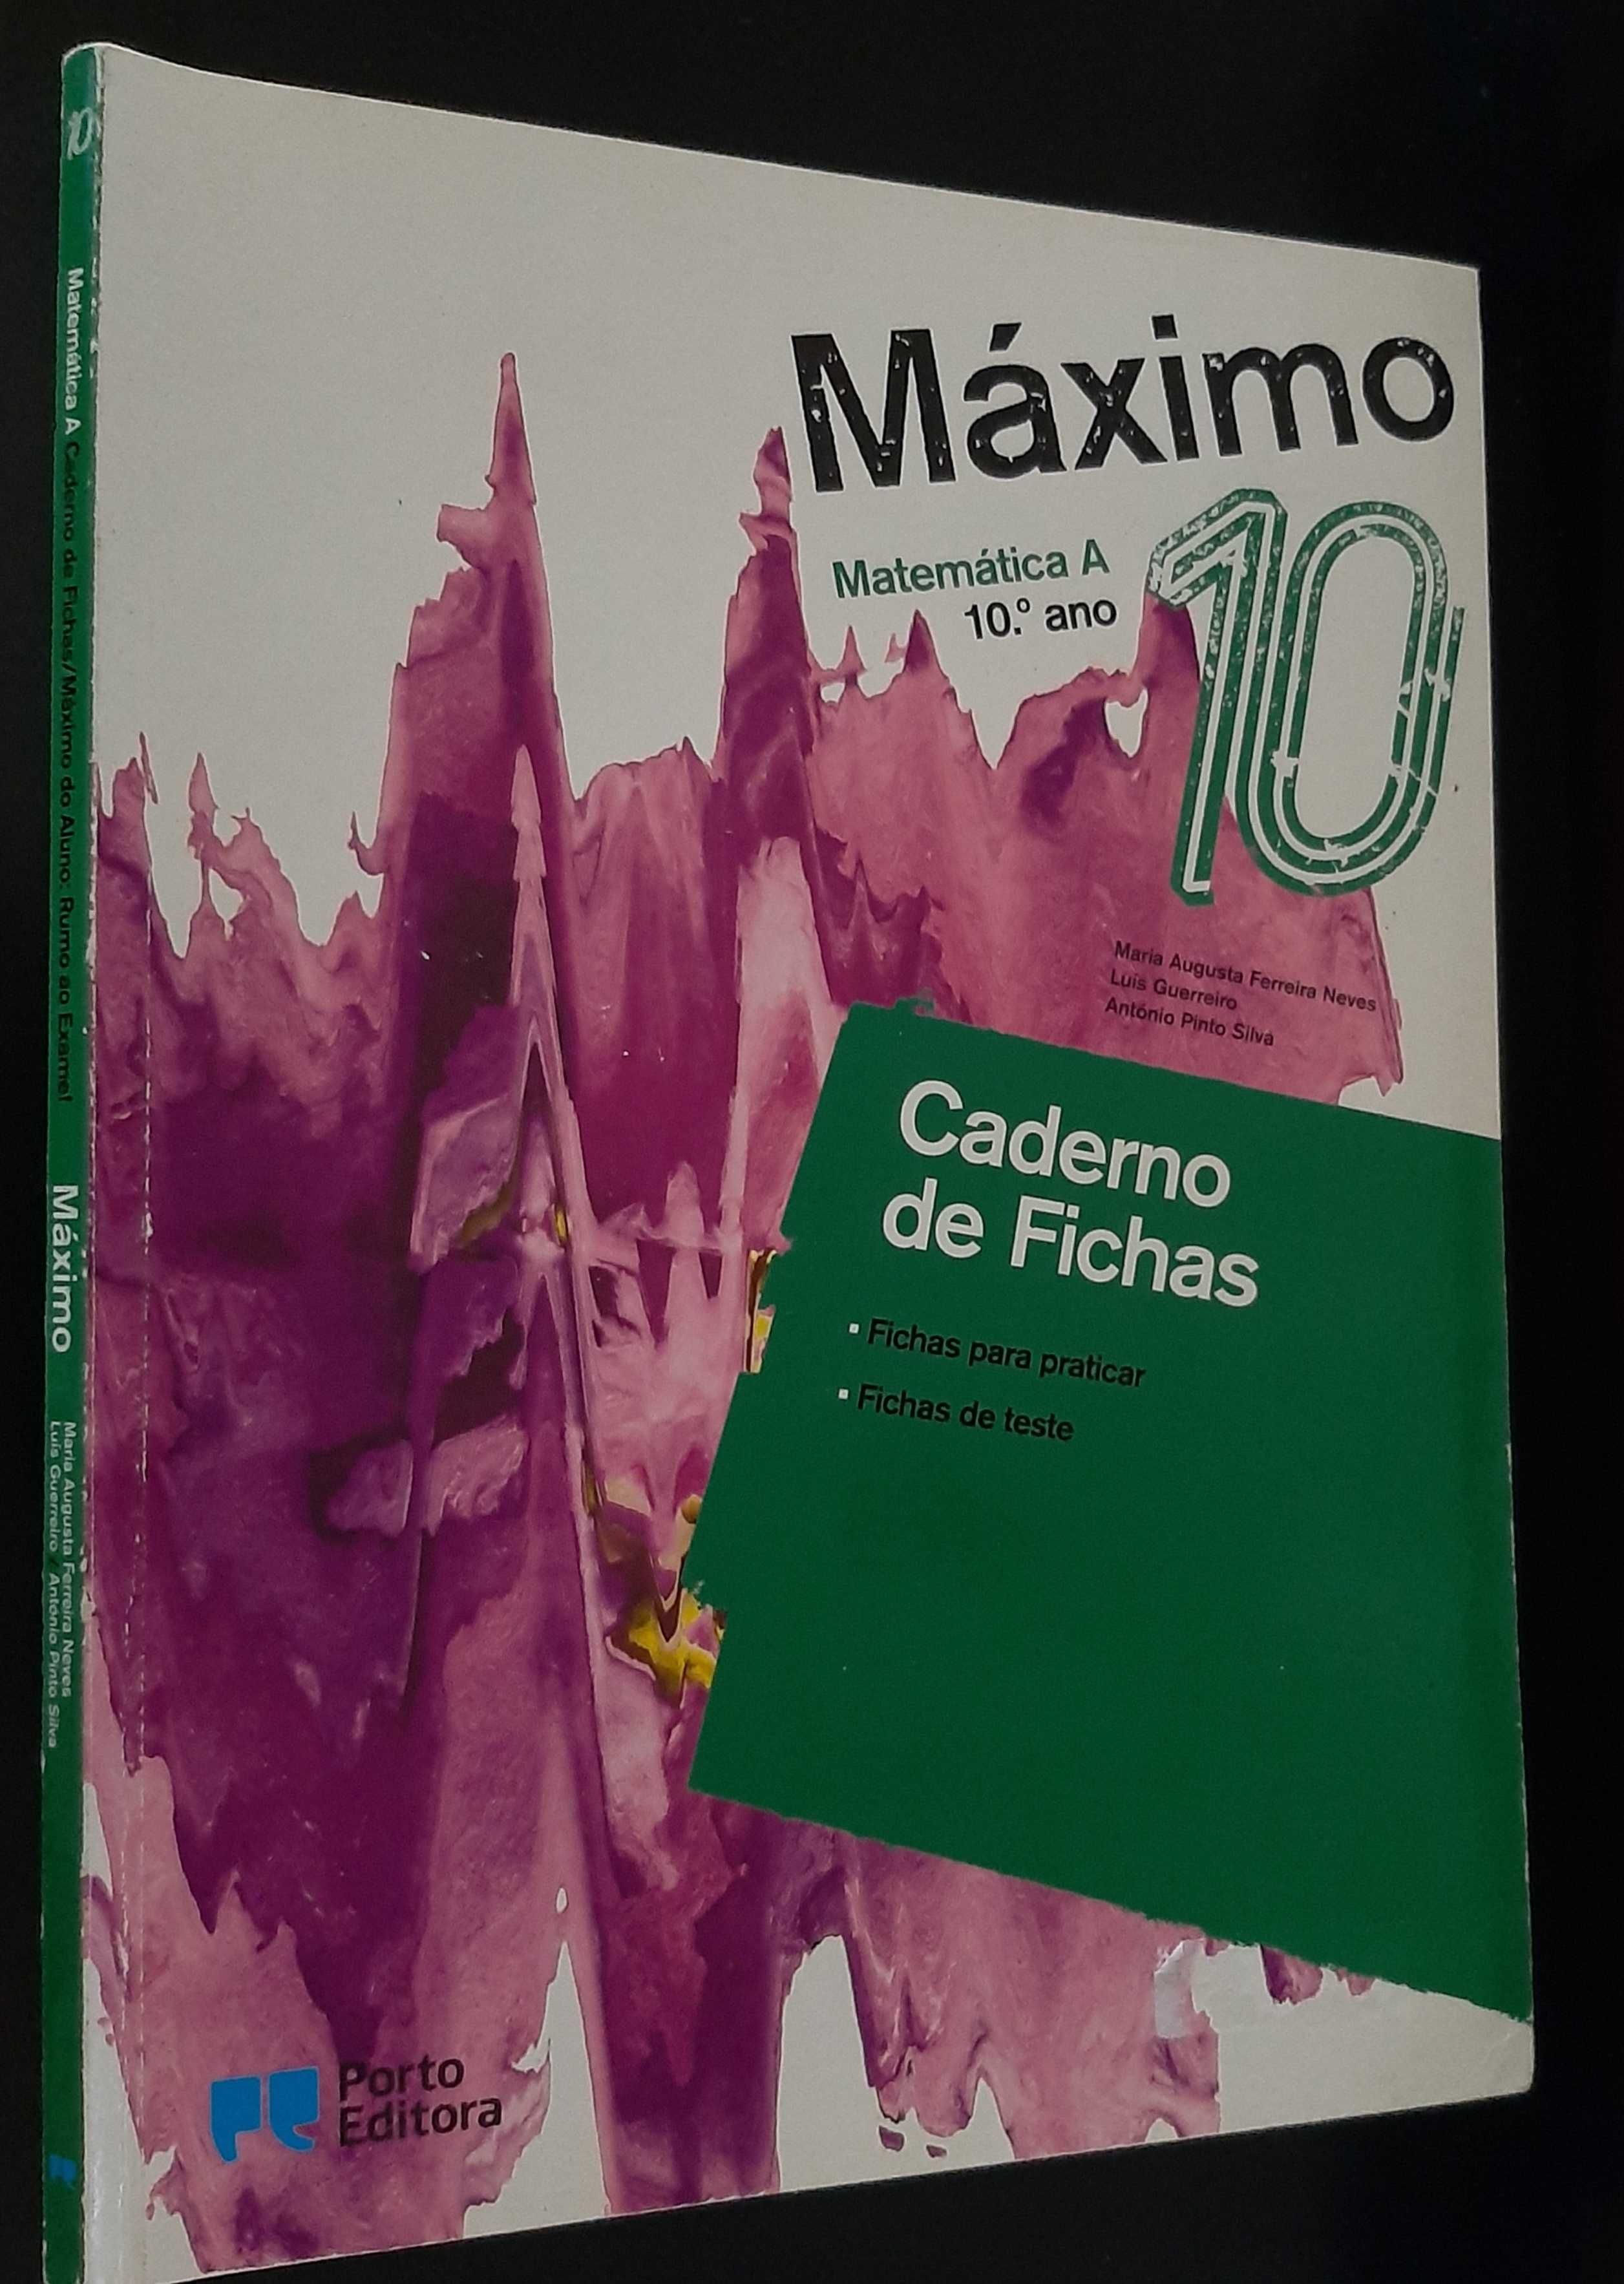 Caderno de Fichas - Matemática A 10º ano